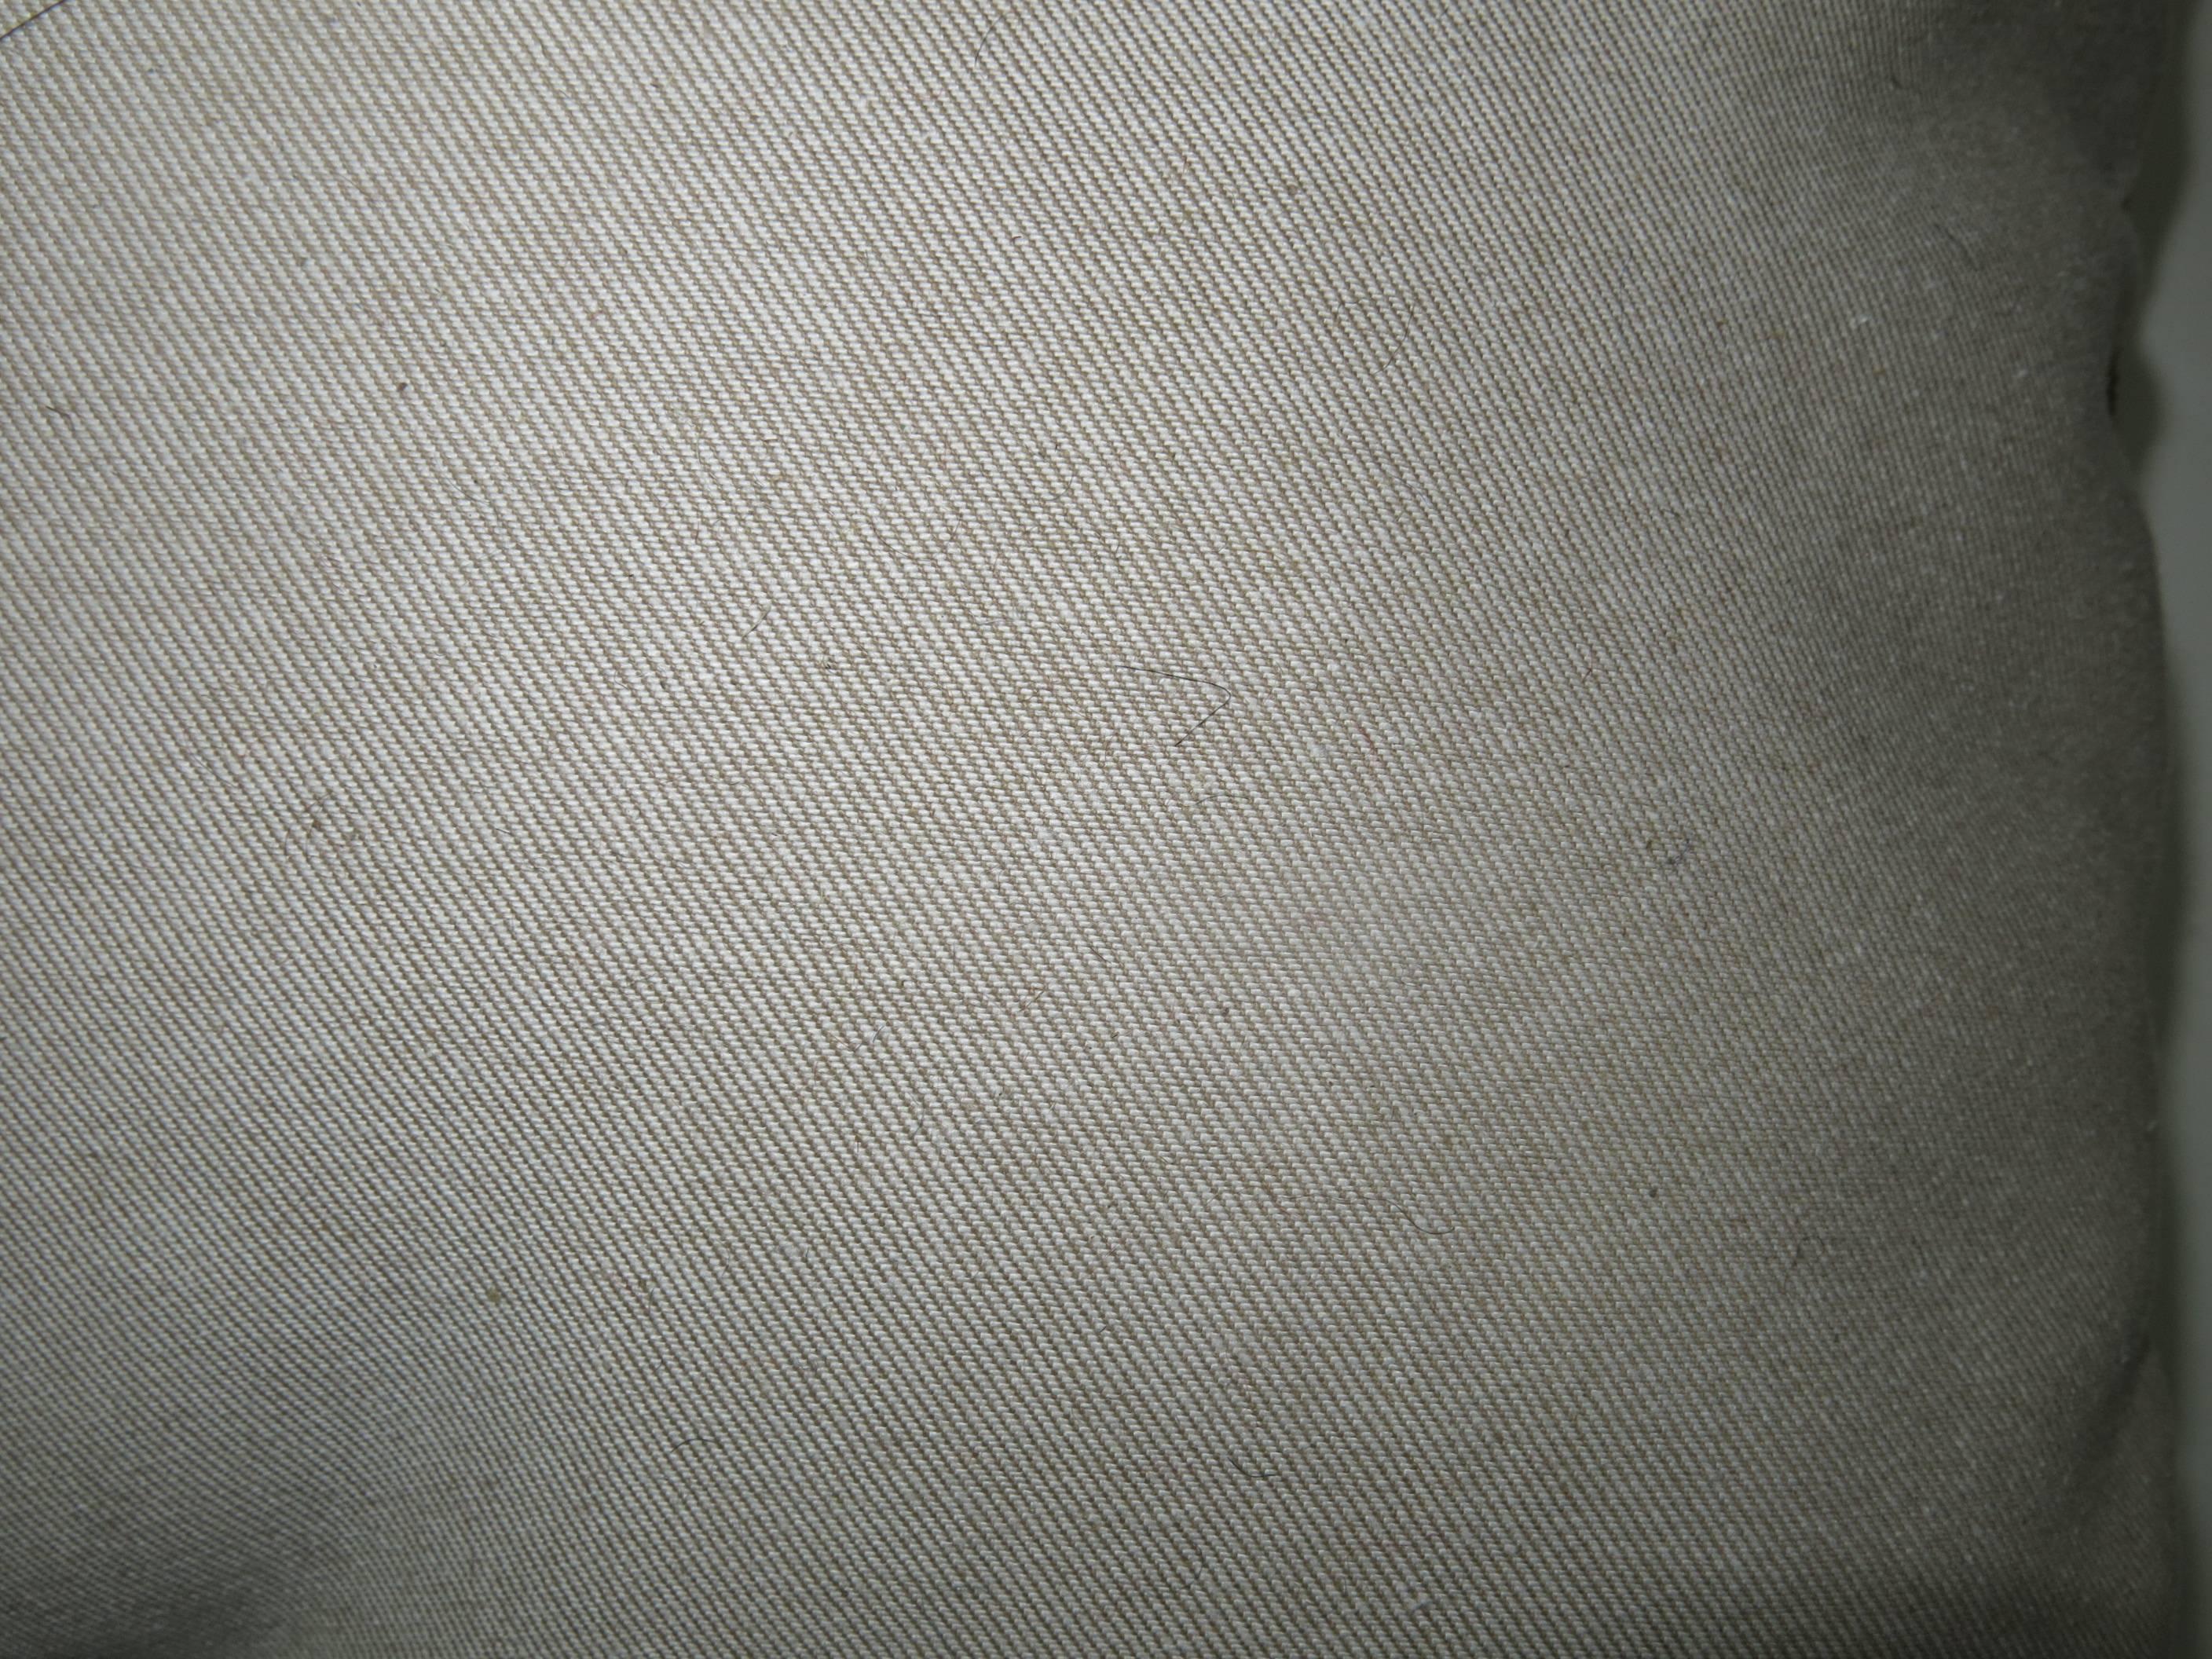 Kissen aus einem strapazierten türkischen Anatolienteppich.

19'' x 20''